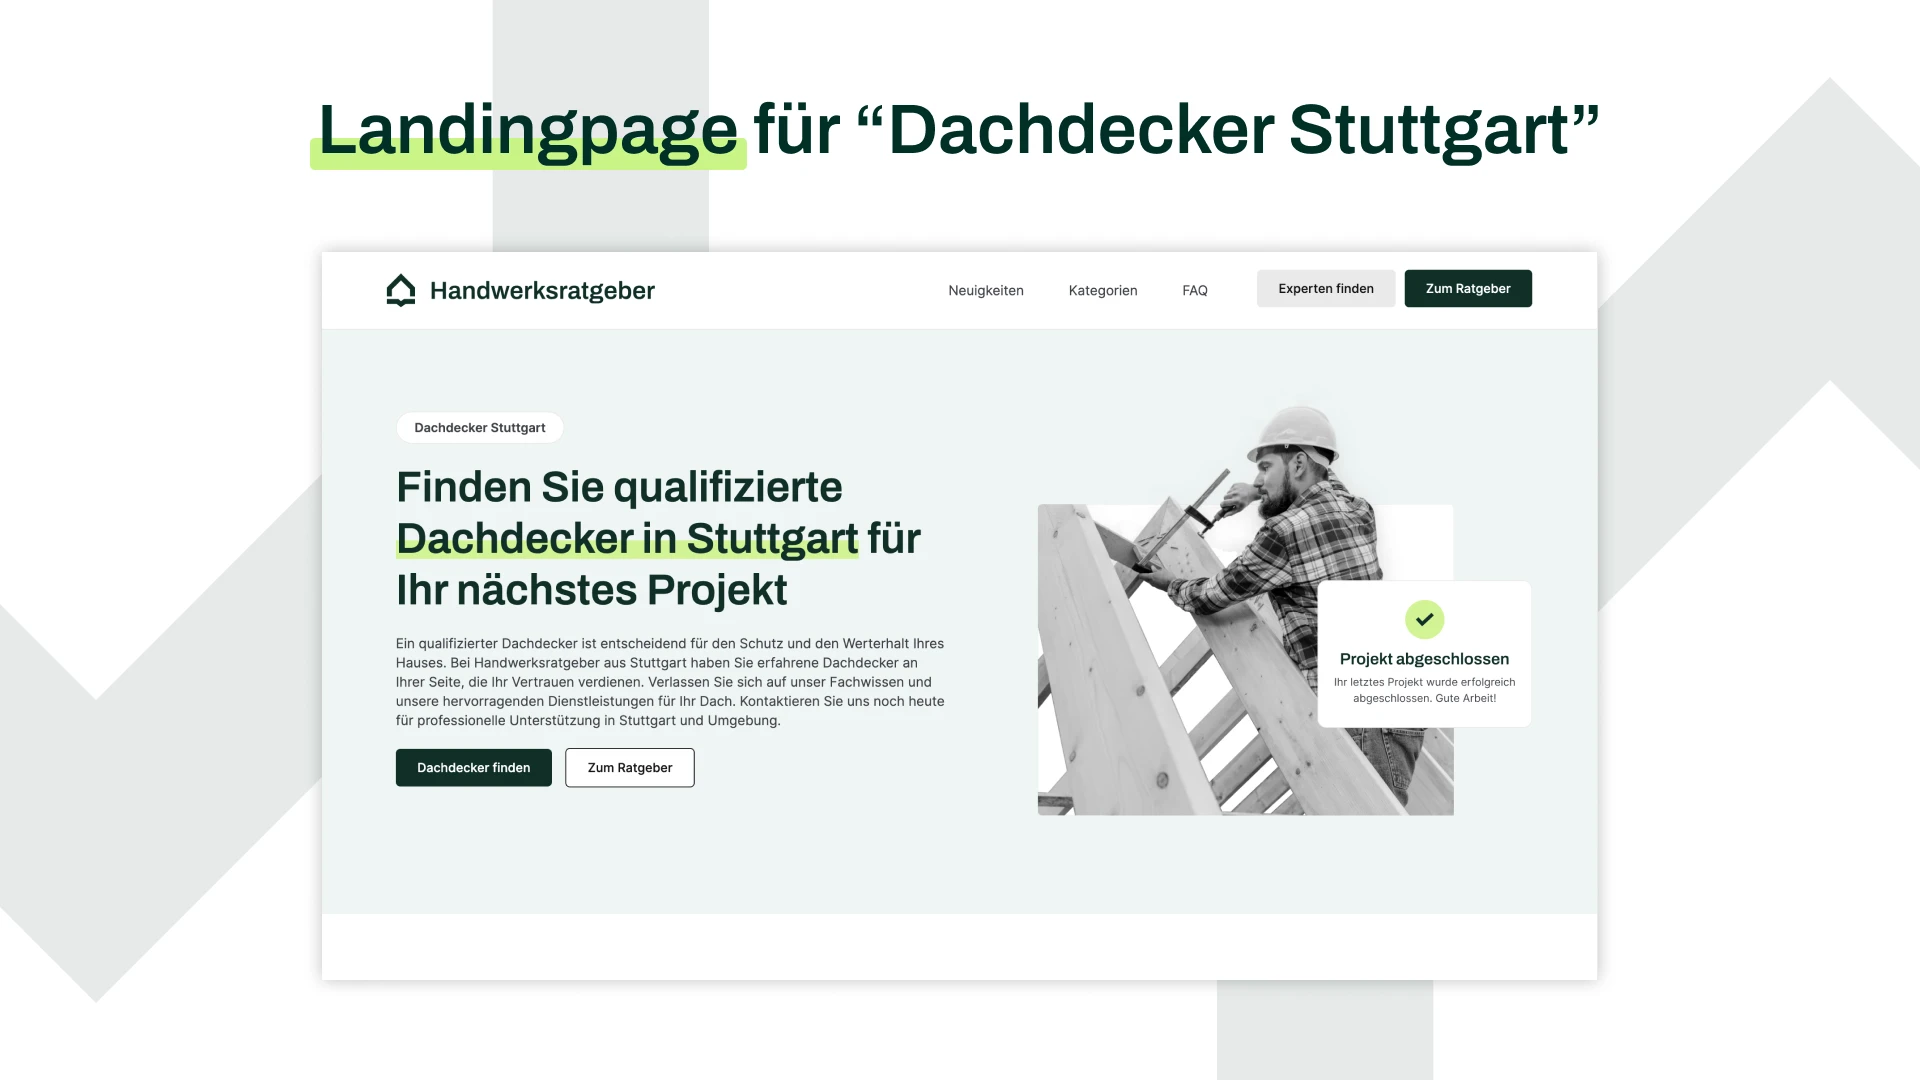 Handwerksratgeber Landingpage für das Keyword "Dachdecker Stuttgart"